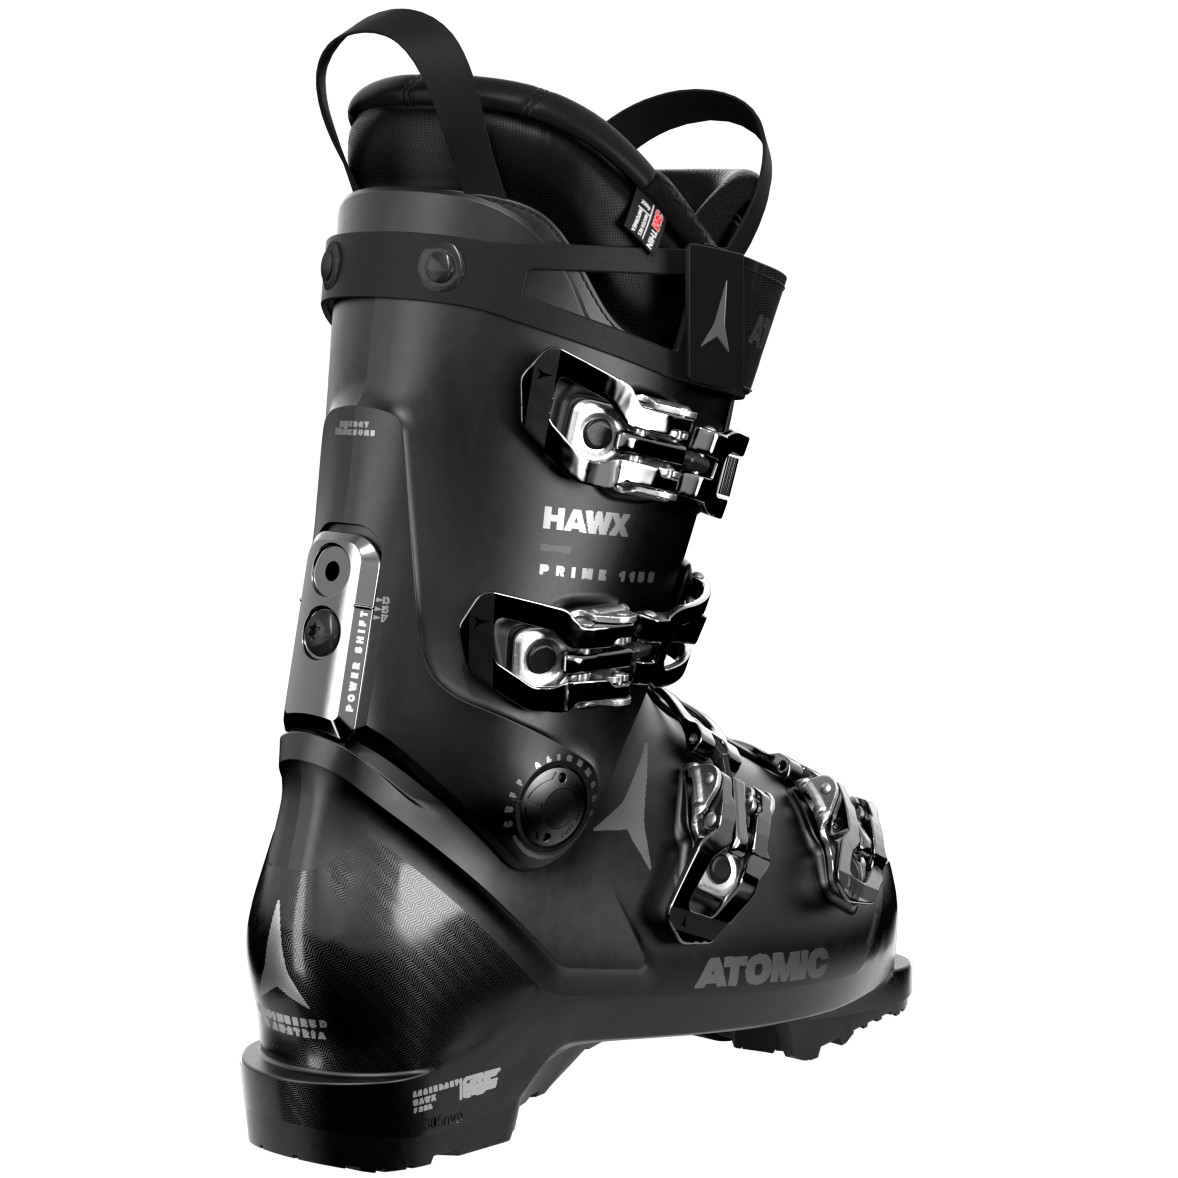 Atomic Hawx Prime 115 S W GW Women's Ski Boots